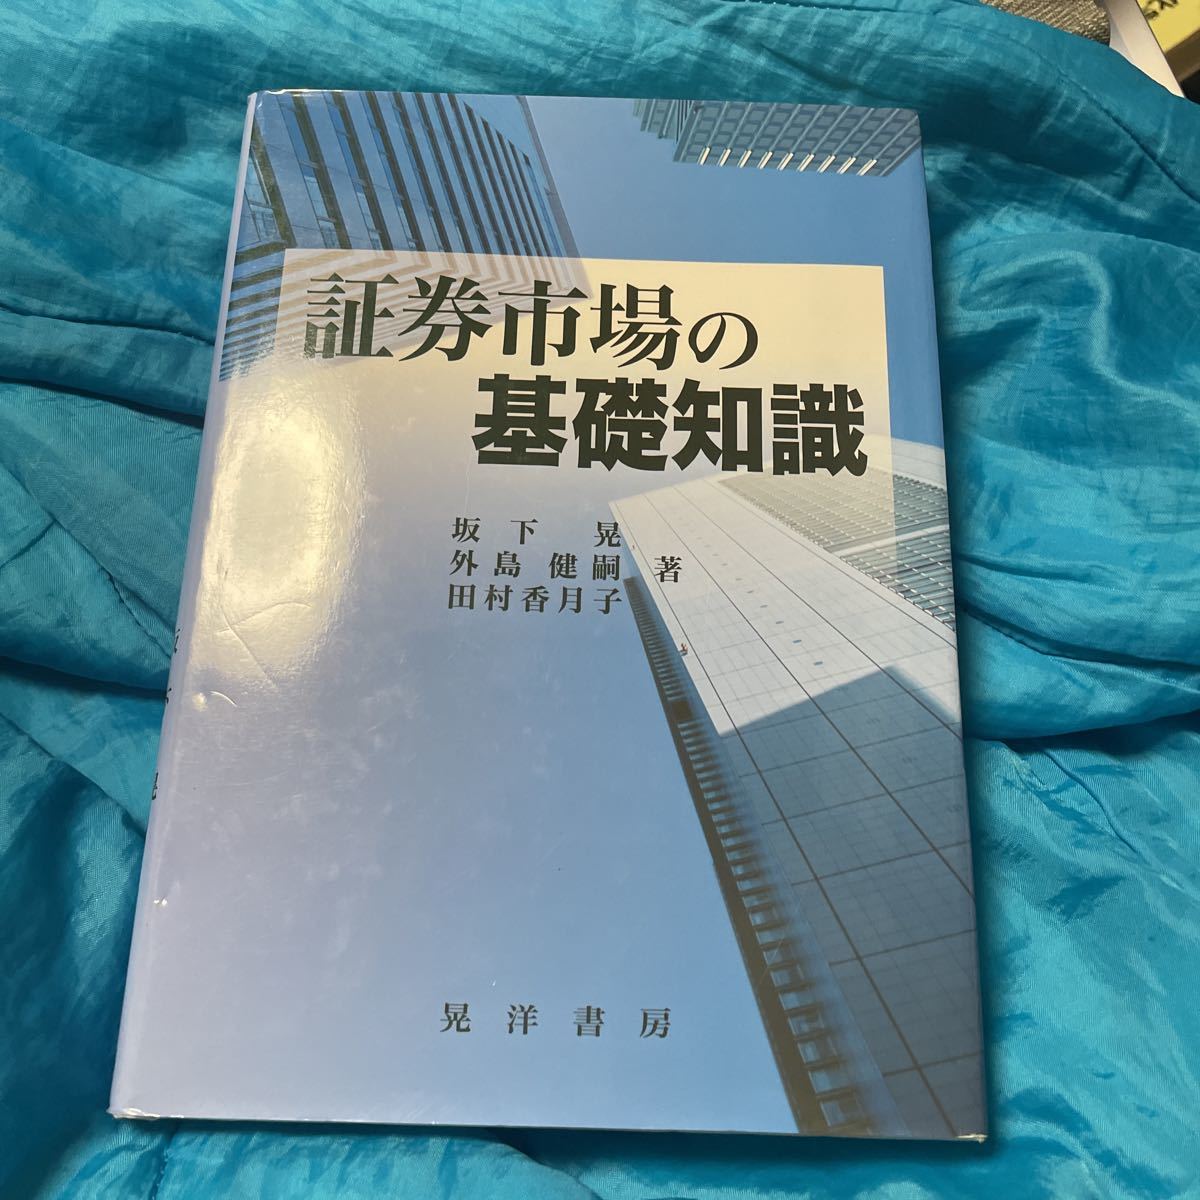 Основные знания о рынке ценных бумаг Акира Сакашита / Кенджи Кенджи / Кацуко Тамура / Автор